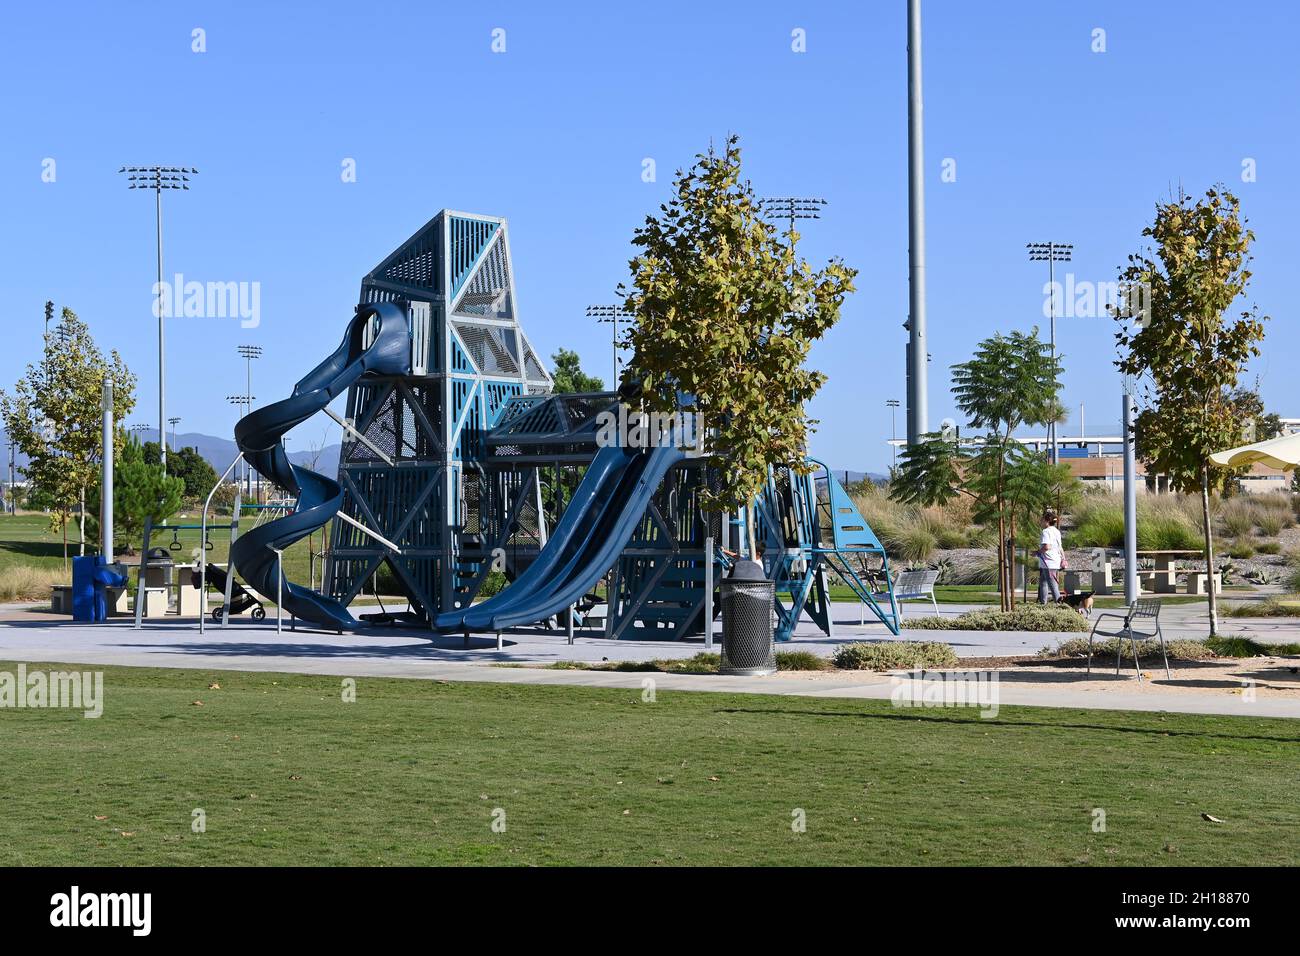 IRVINE, CALIFORNIA - 15 ottobre 2021: L'area giochi per bambini con varie attrezzature per bambini piccoli. Foto Stock